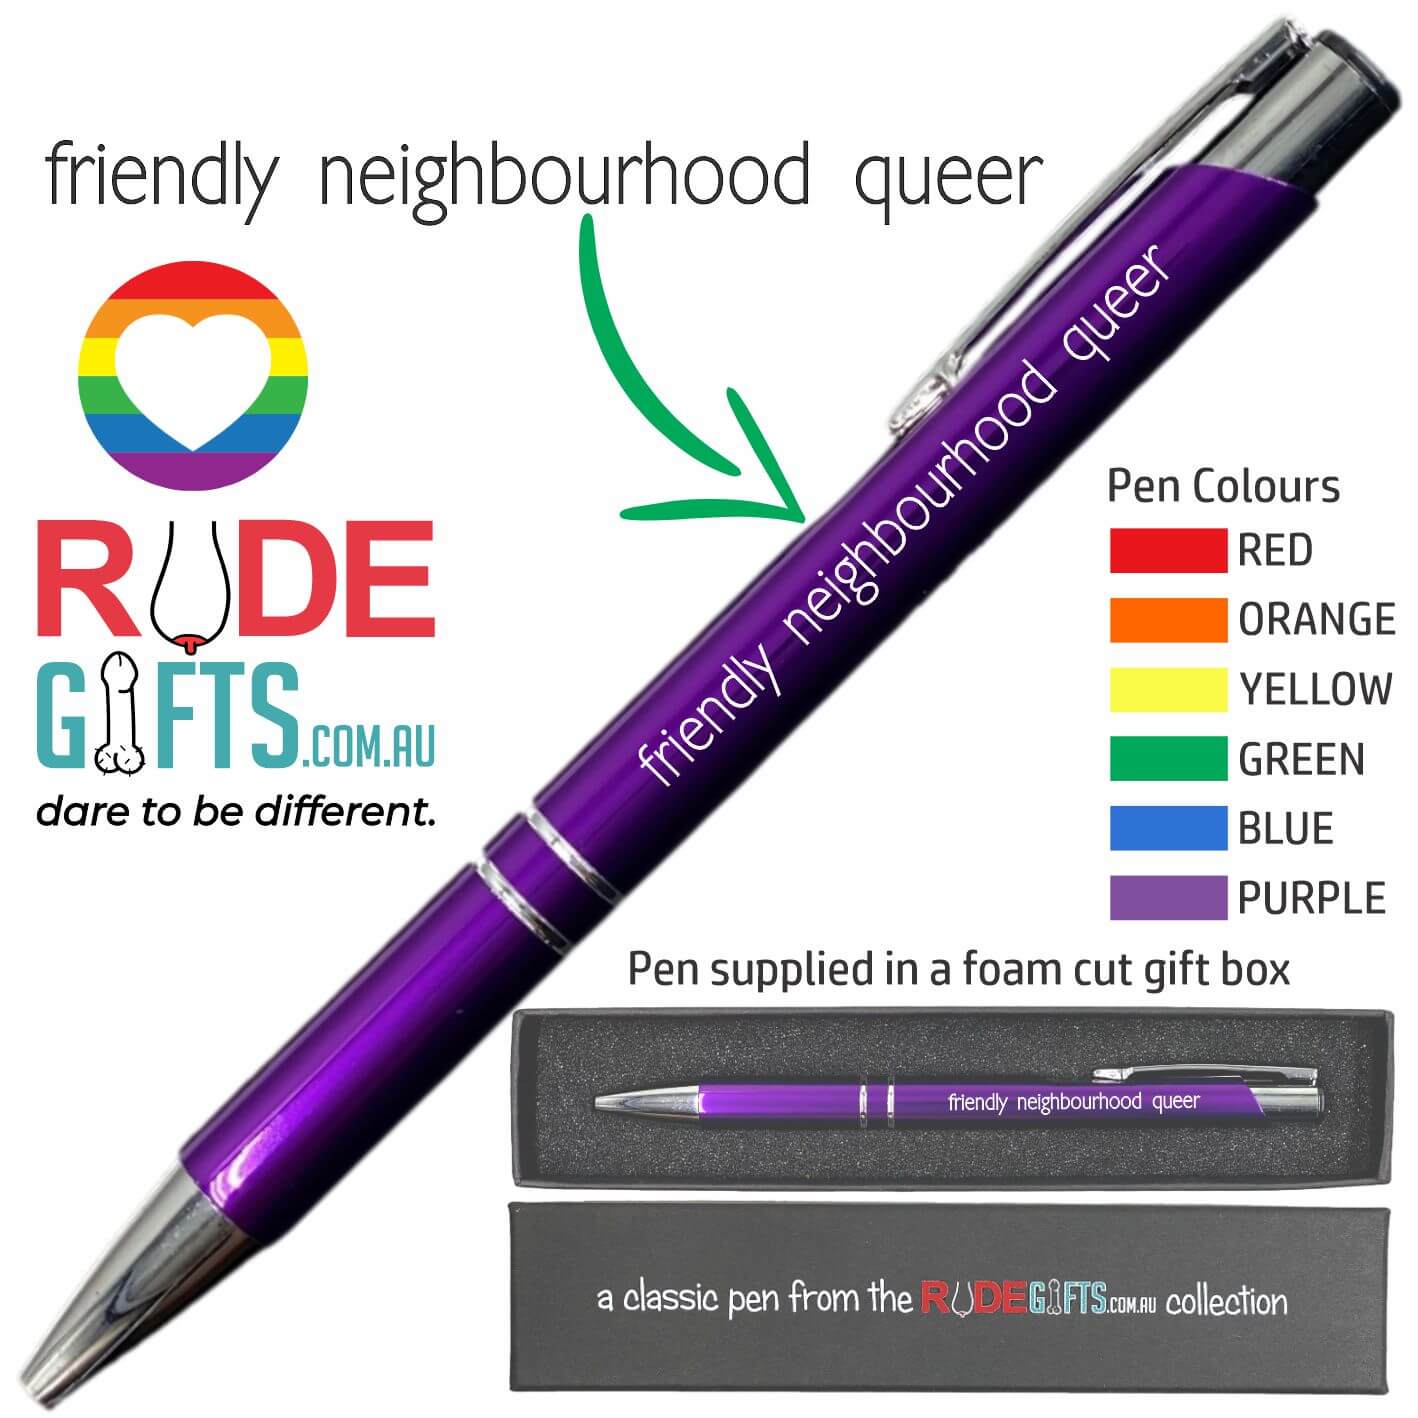 friendly neighbourhood queer